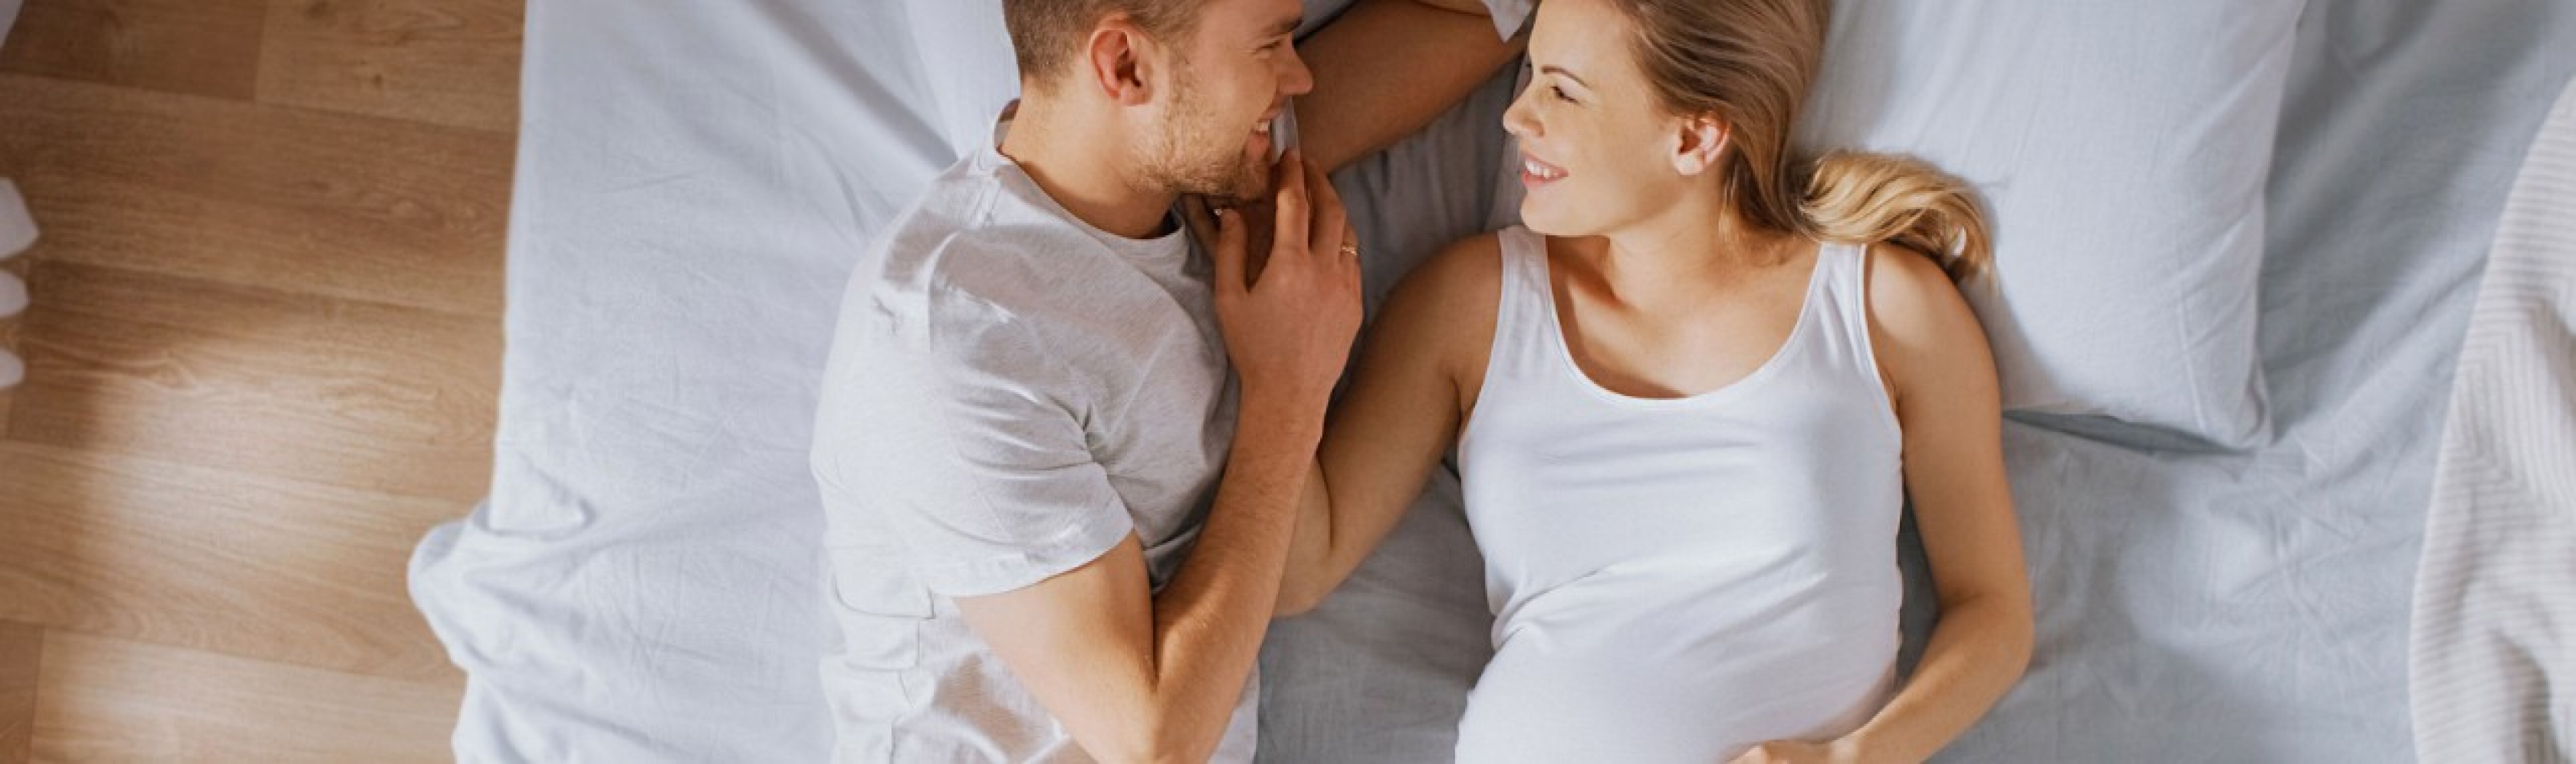 Partnerschaft und Sexualität nach der Geburt – Paar lächelt sich an, Frau ist schwanger